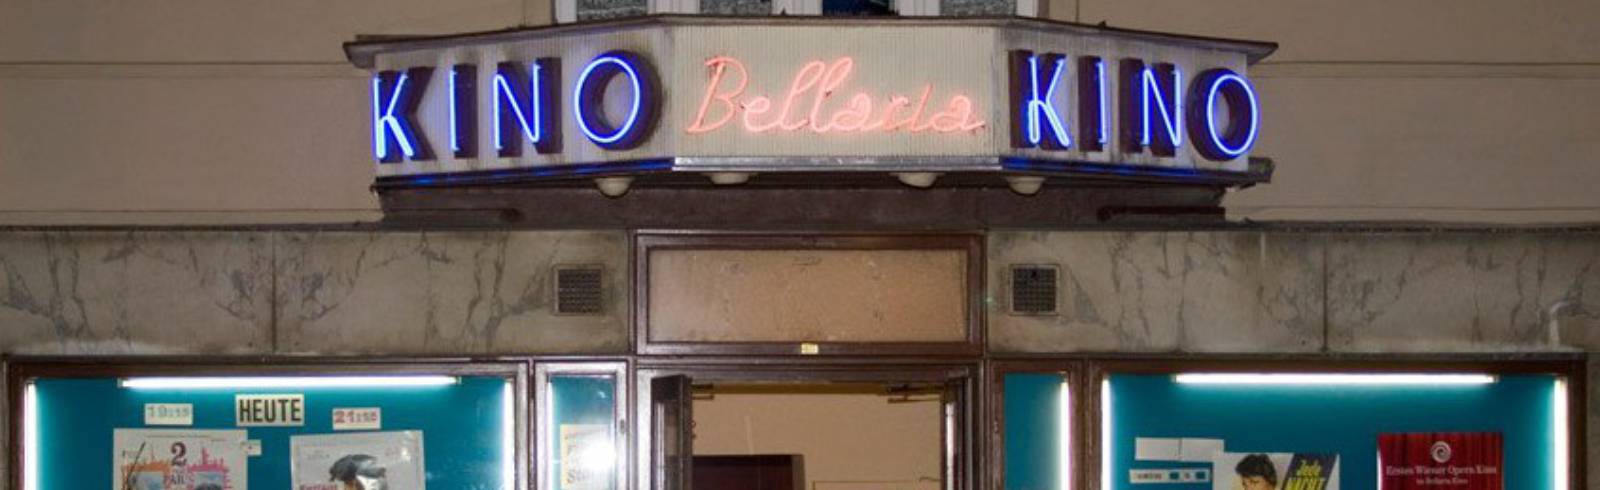 Bellaria-Kino: Crowdfunding erfolgreich beendet